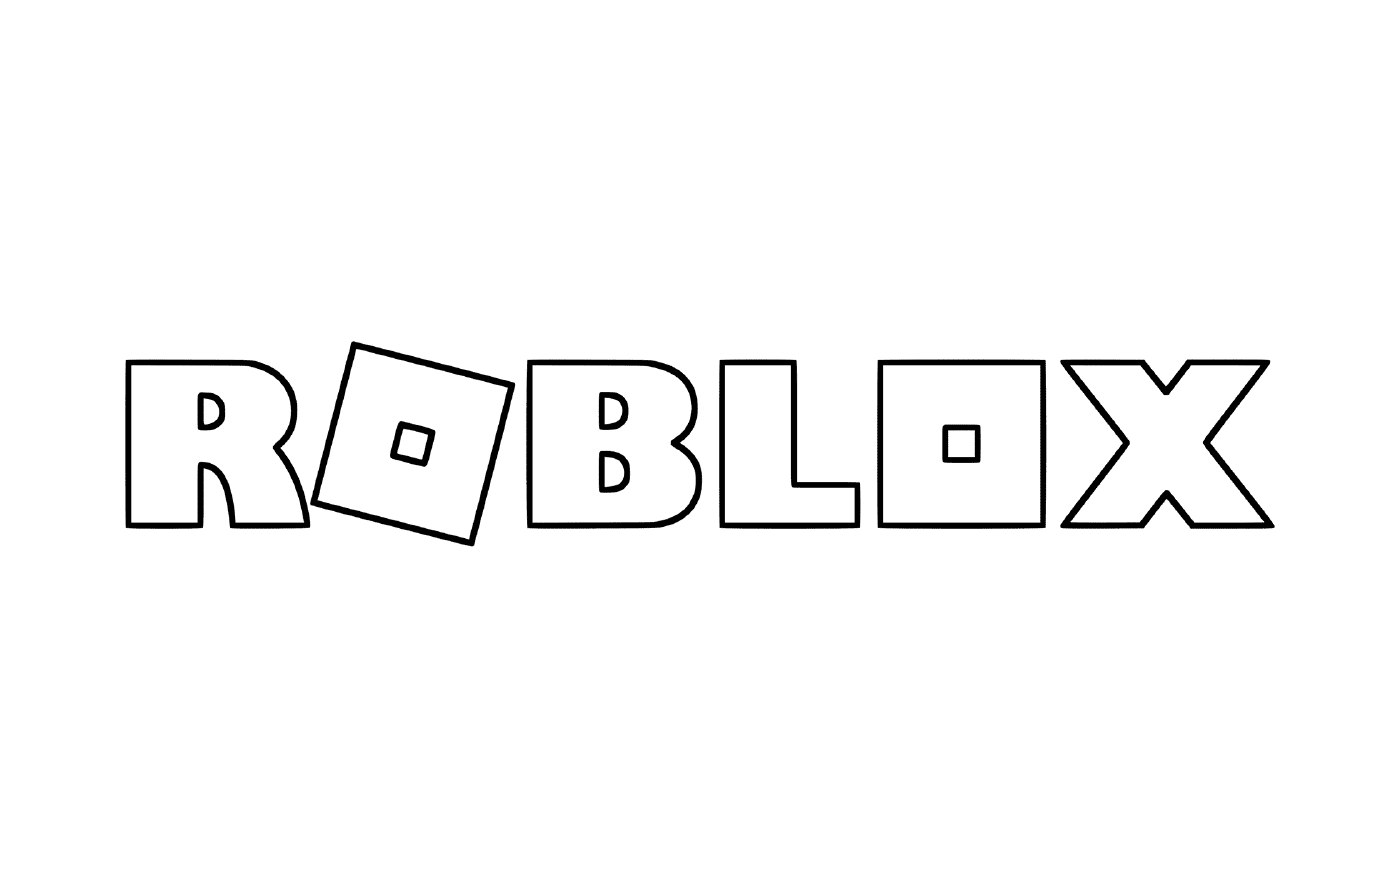  Official Roblox logo 